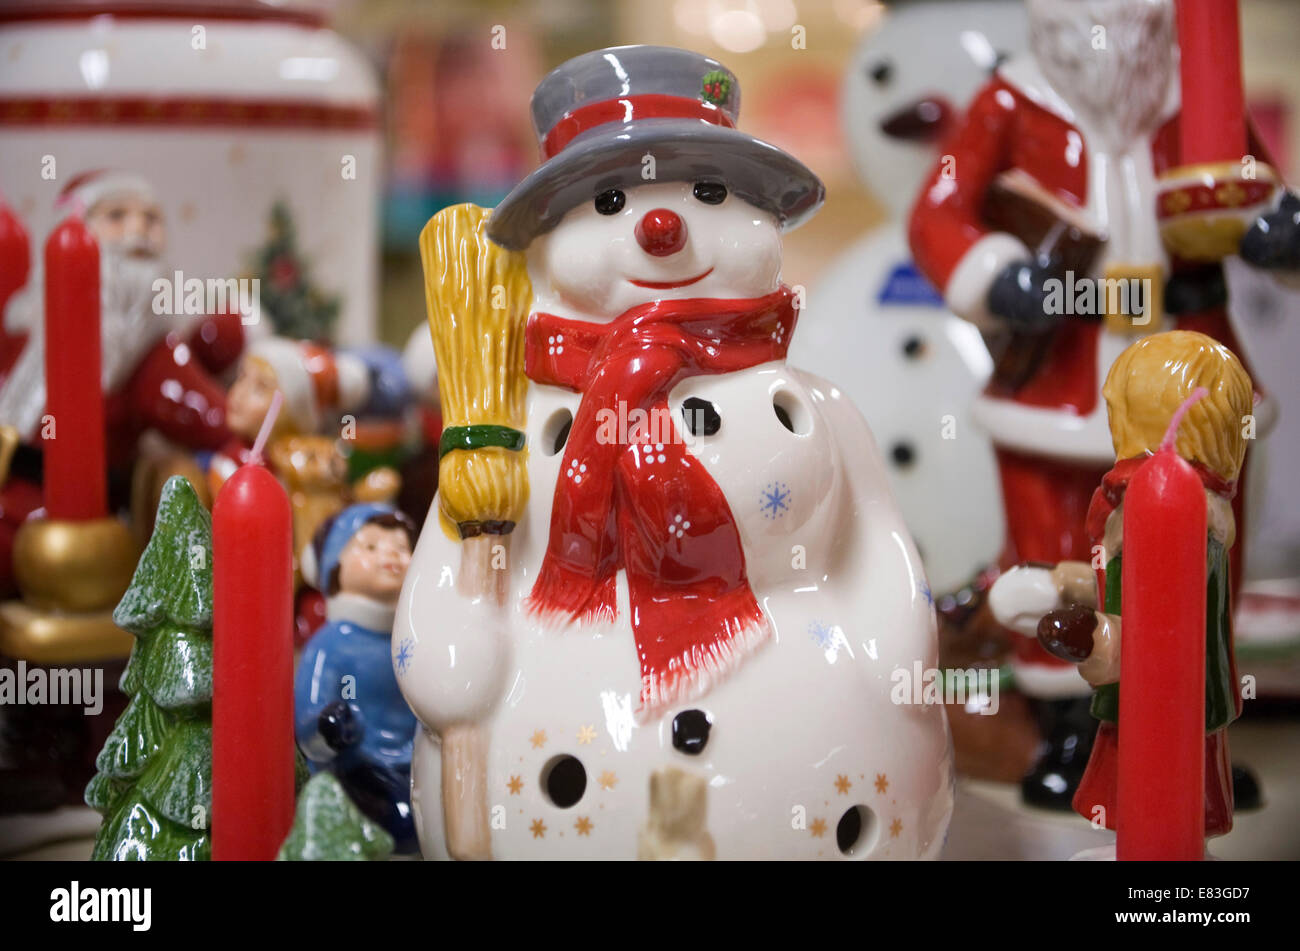 Bonhomme de neige de Noël Décoration figurine de la Chine avec d'autres décorations faites par Villeroy & Boch derrière. Banque D'Images